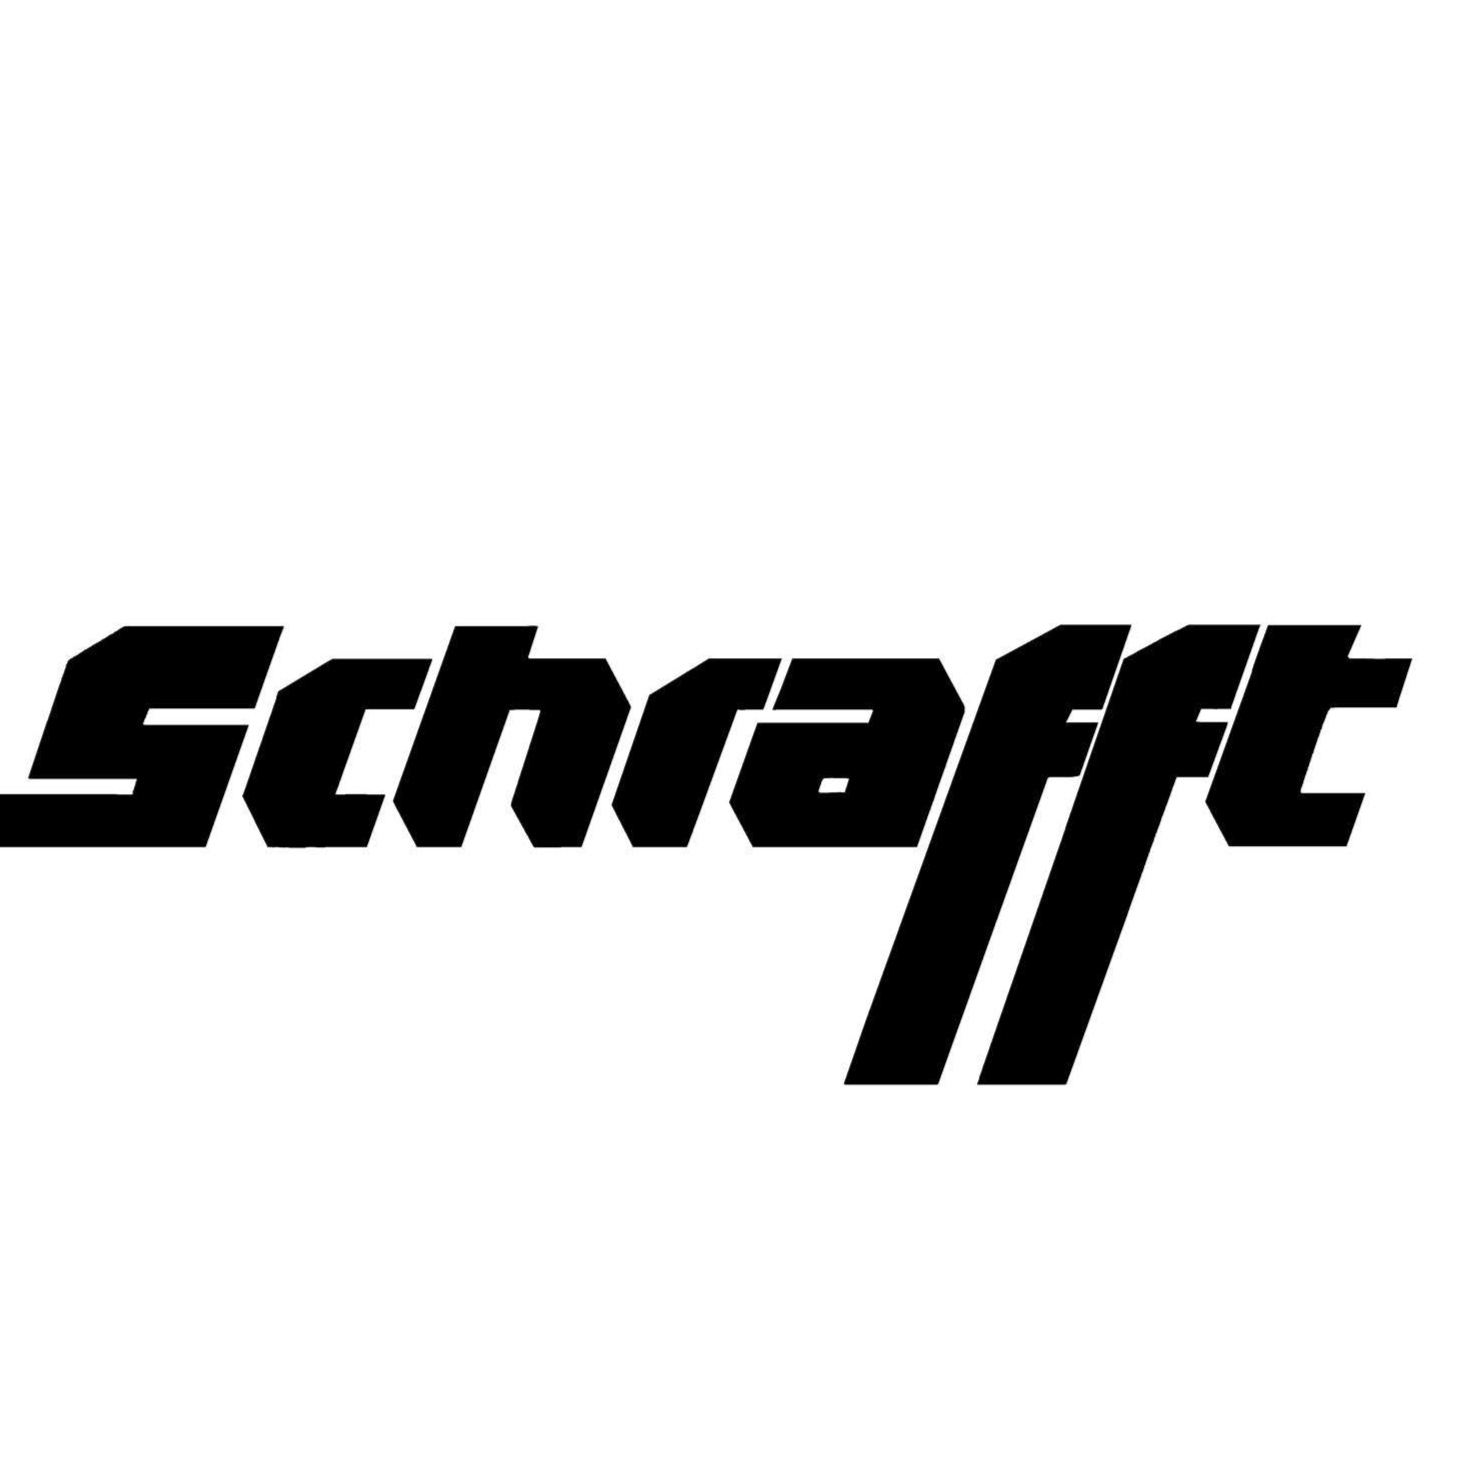 Autohaus Schrafft Gmbh & Co. Kg